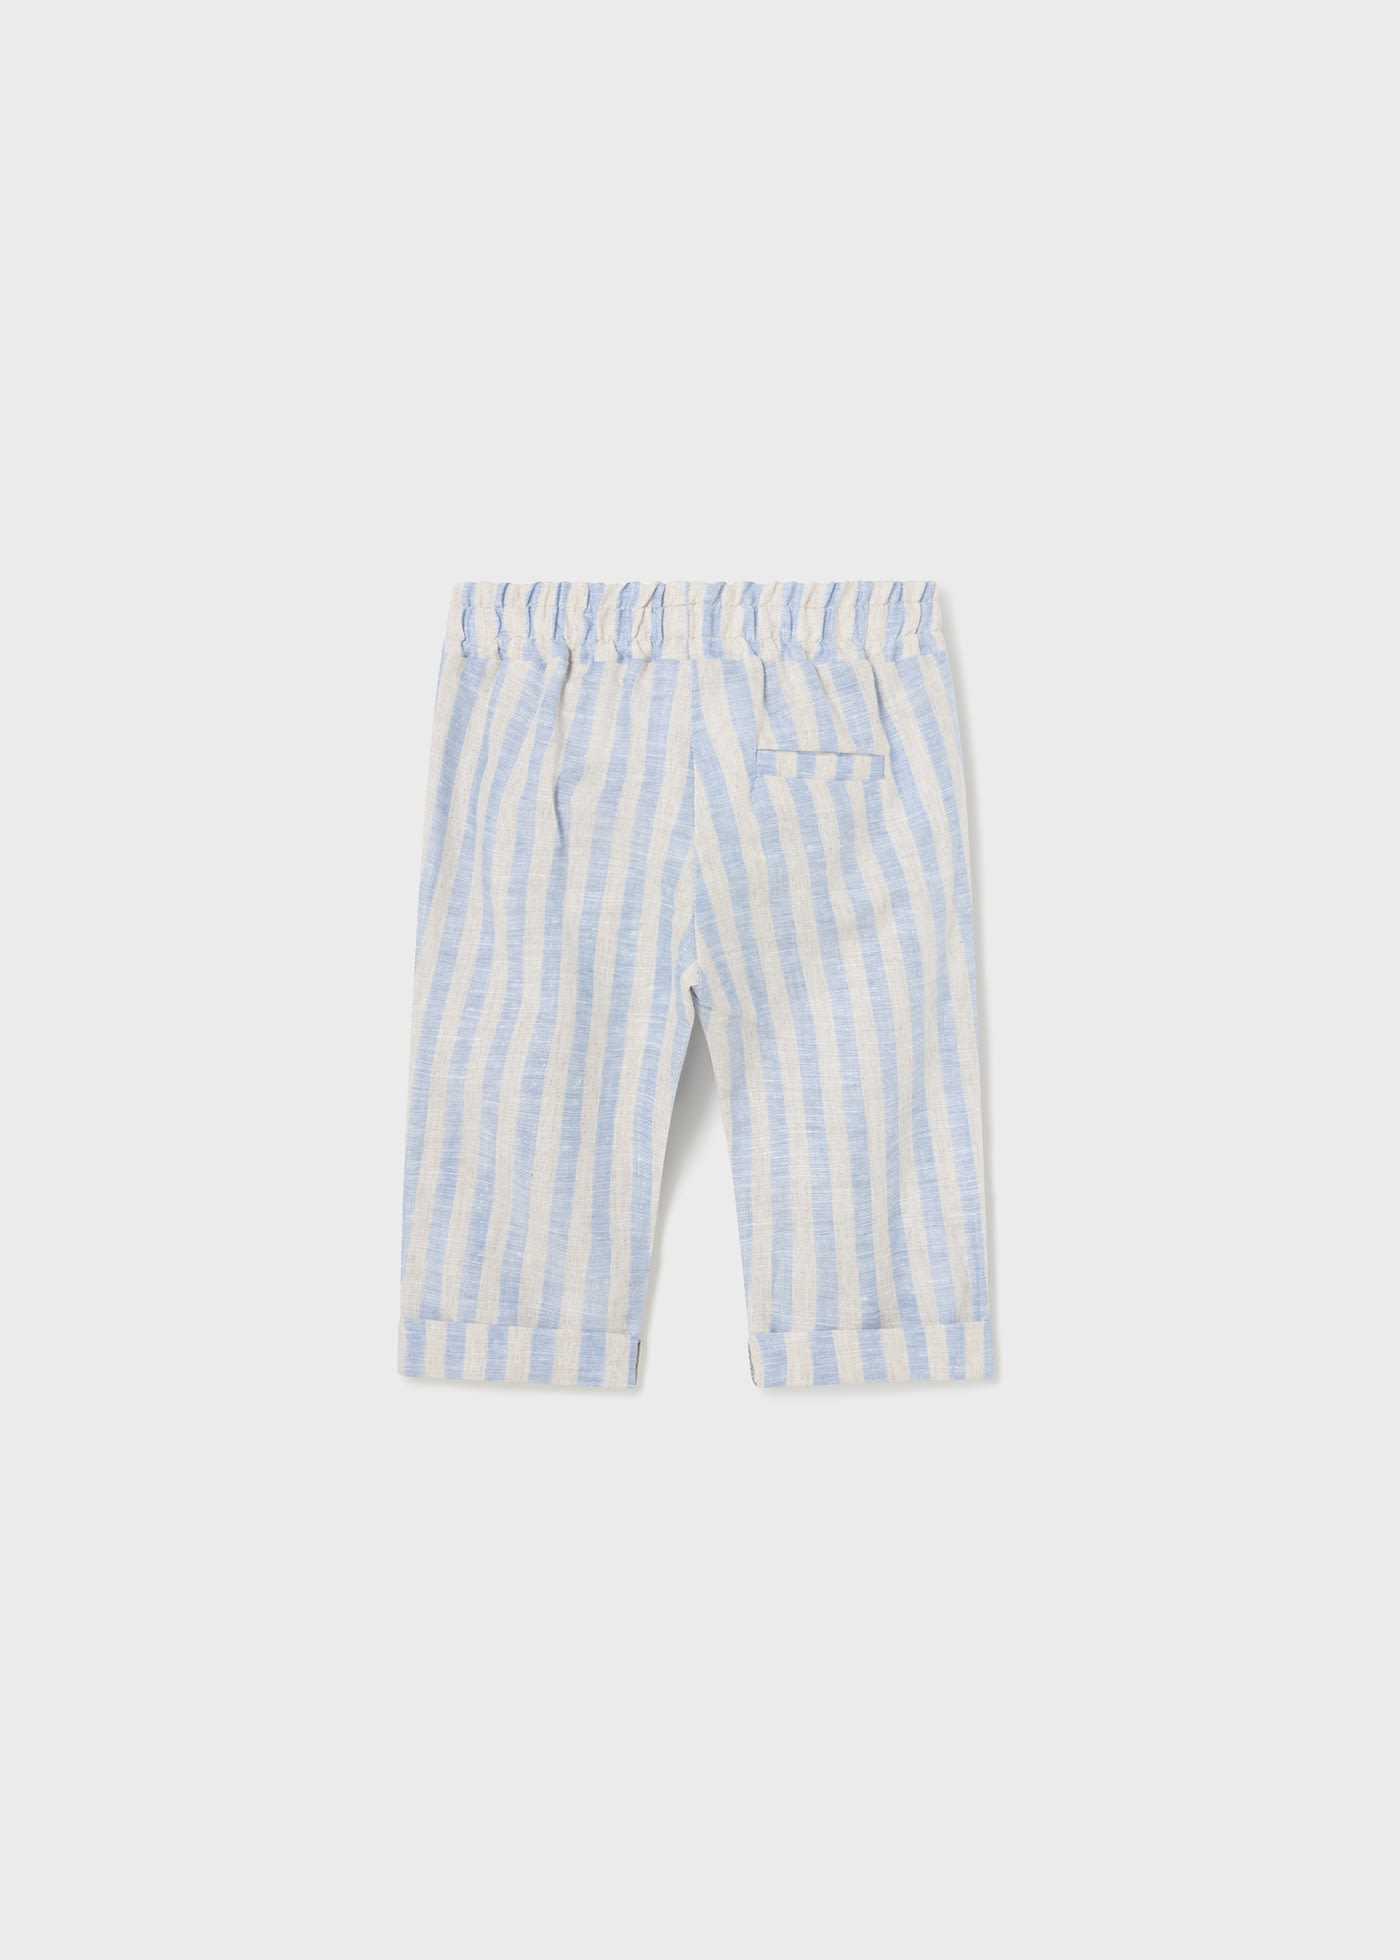 Pantalone lungo lino neonato